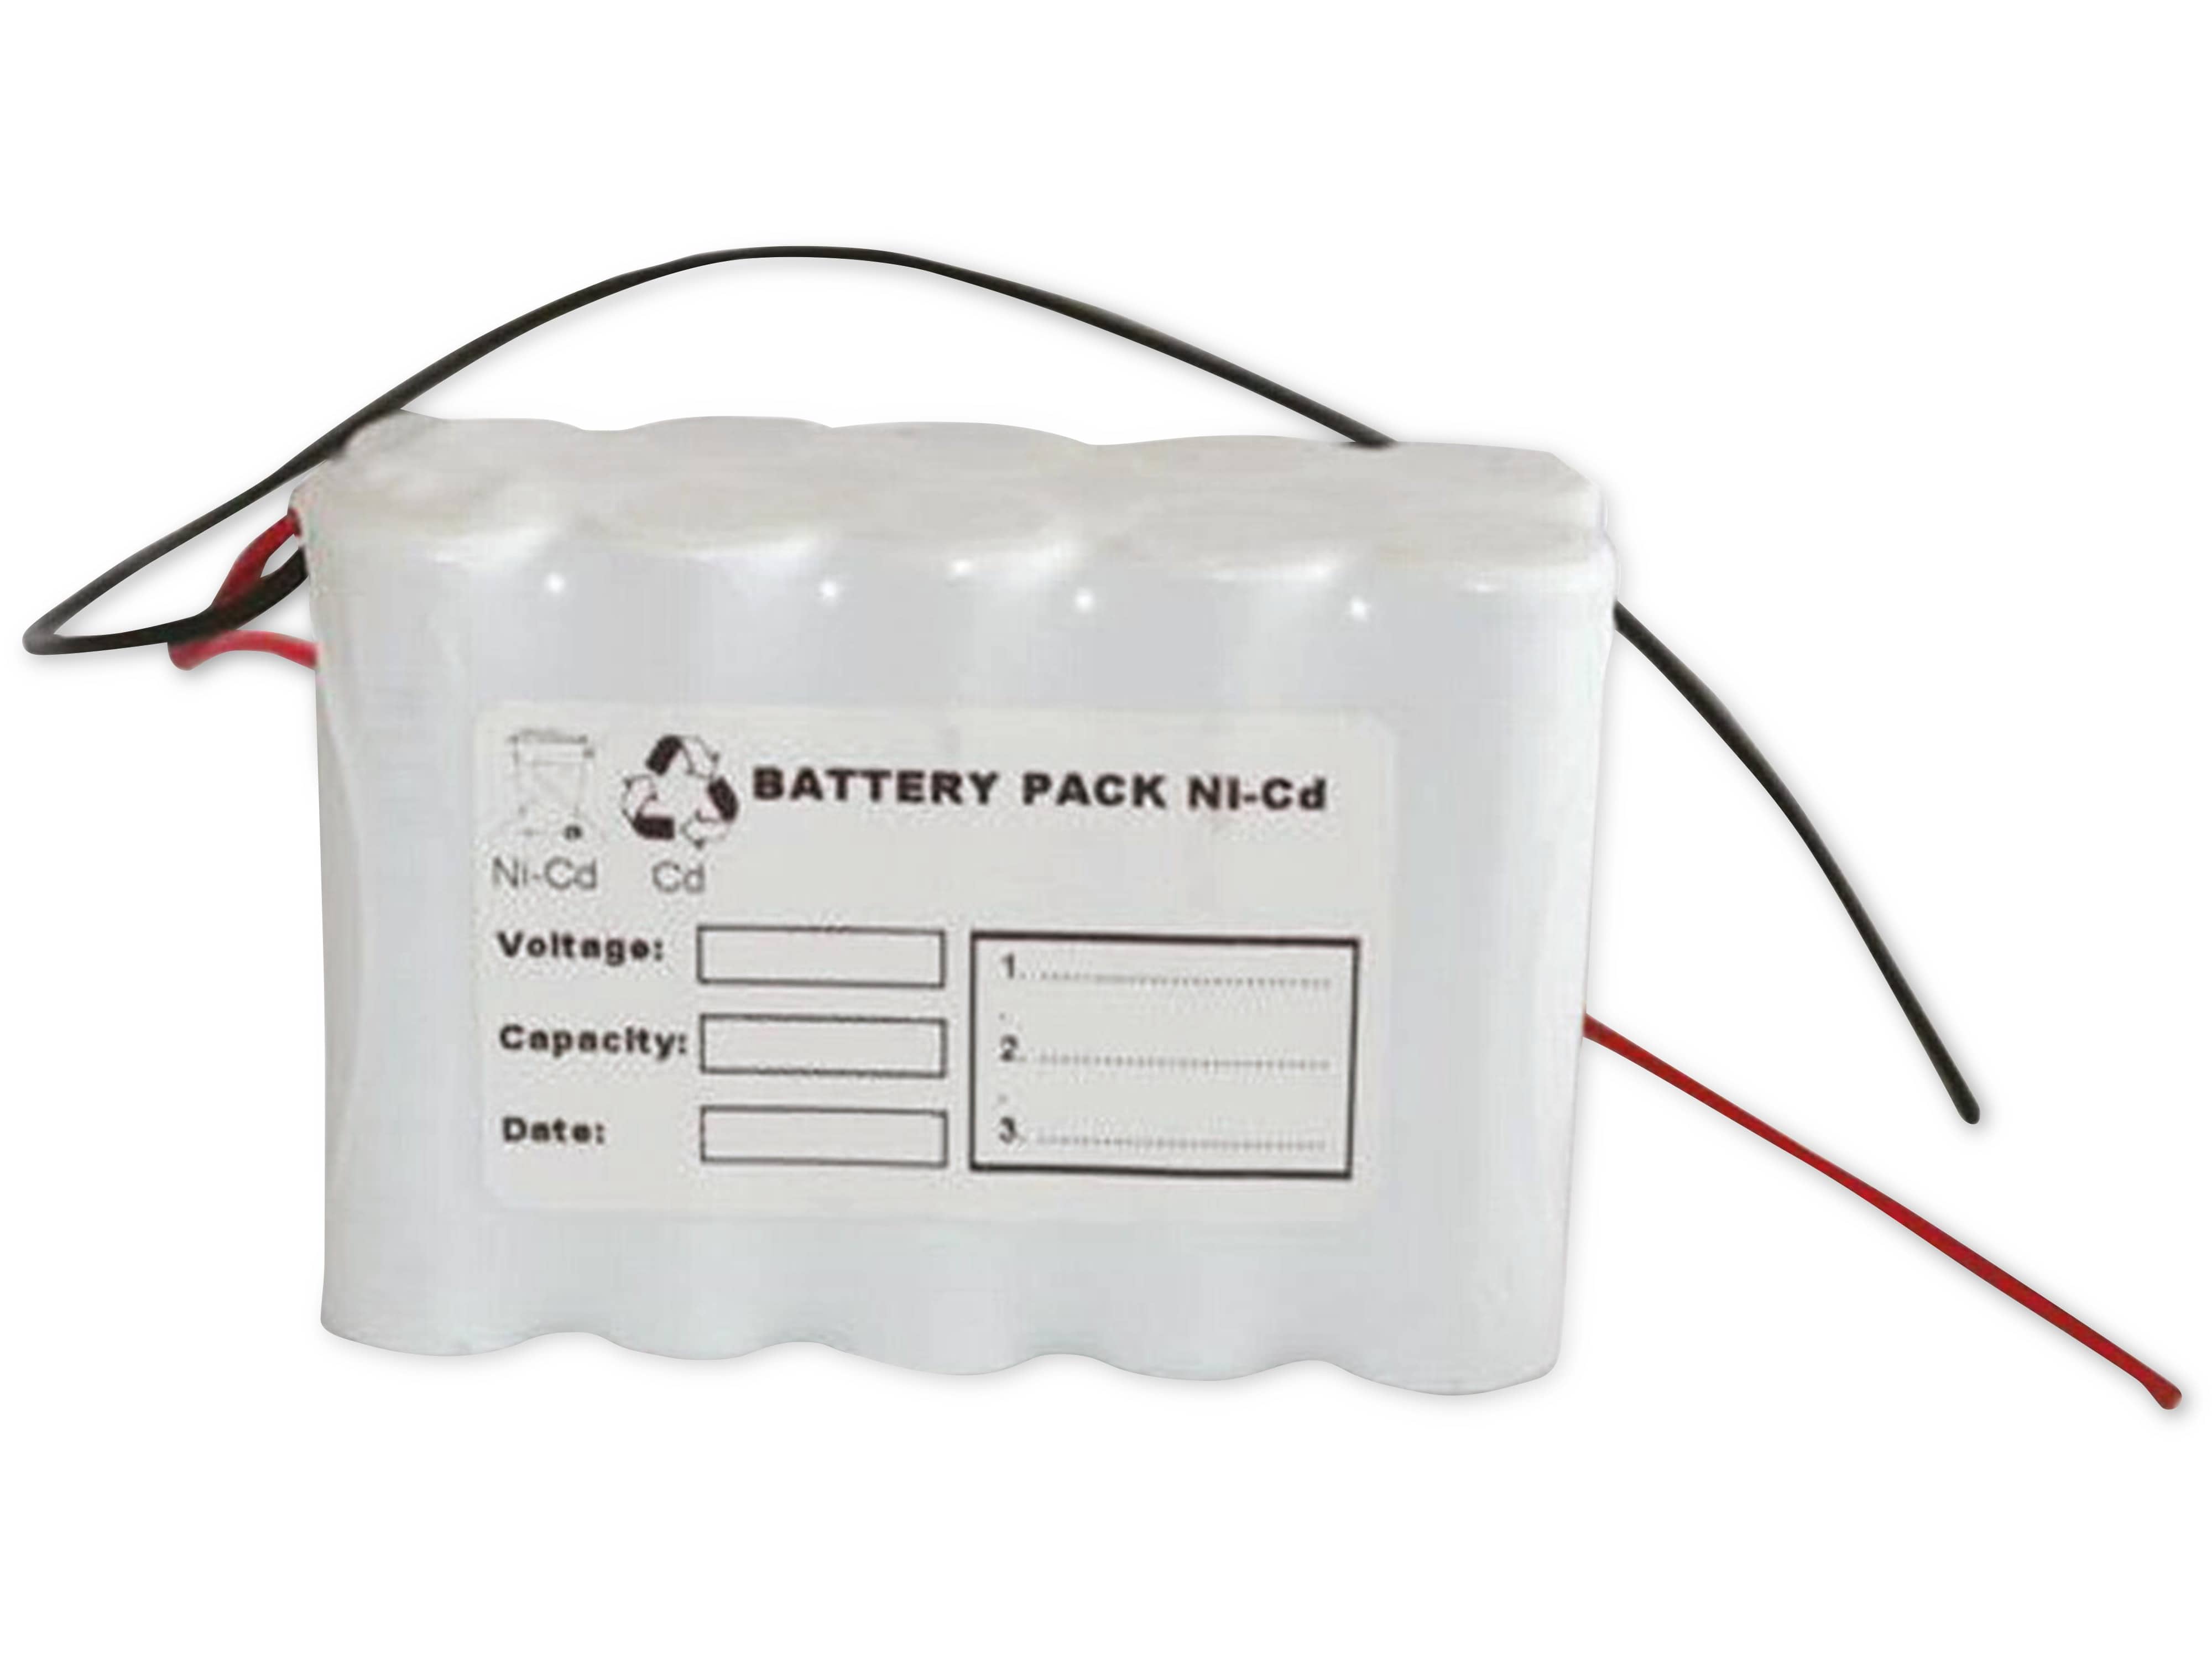 Q-BATTERIES Akku-Pack, 12 V, 800mAh, NiCd F5x2, 10xAA HT-Zellen mit Kabel